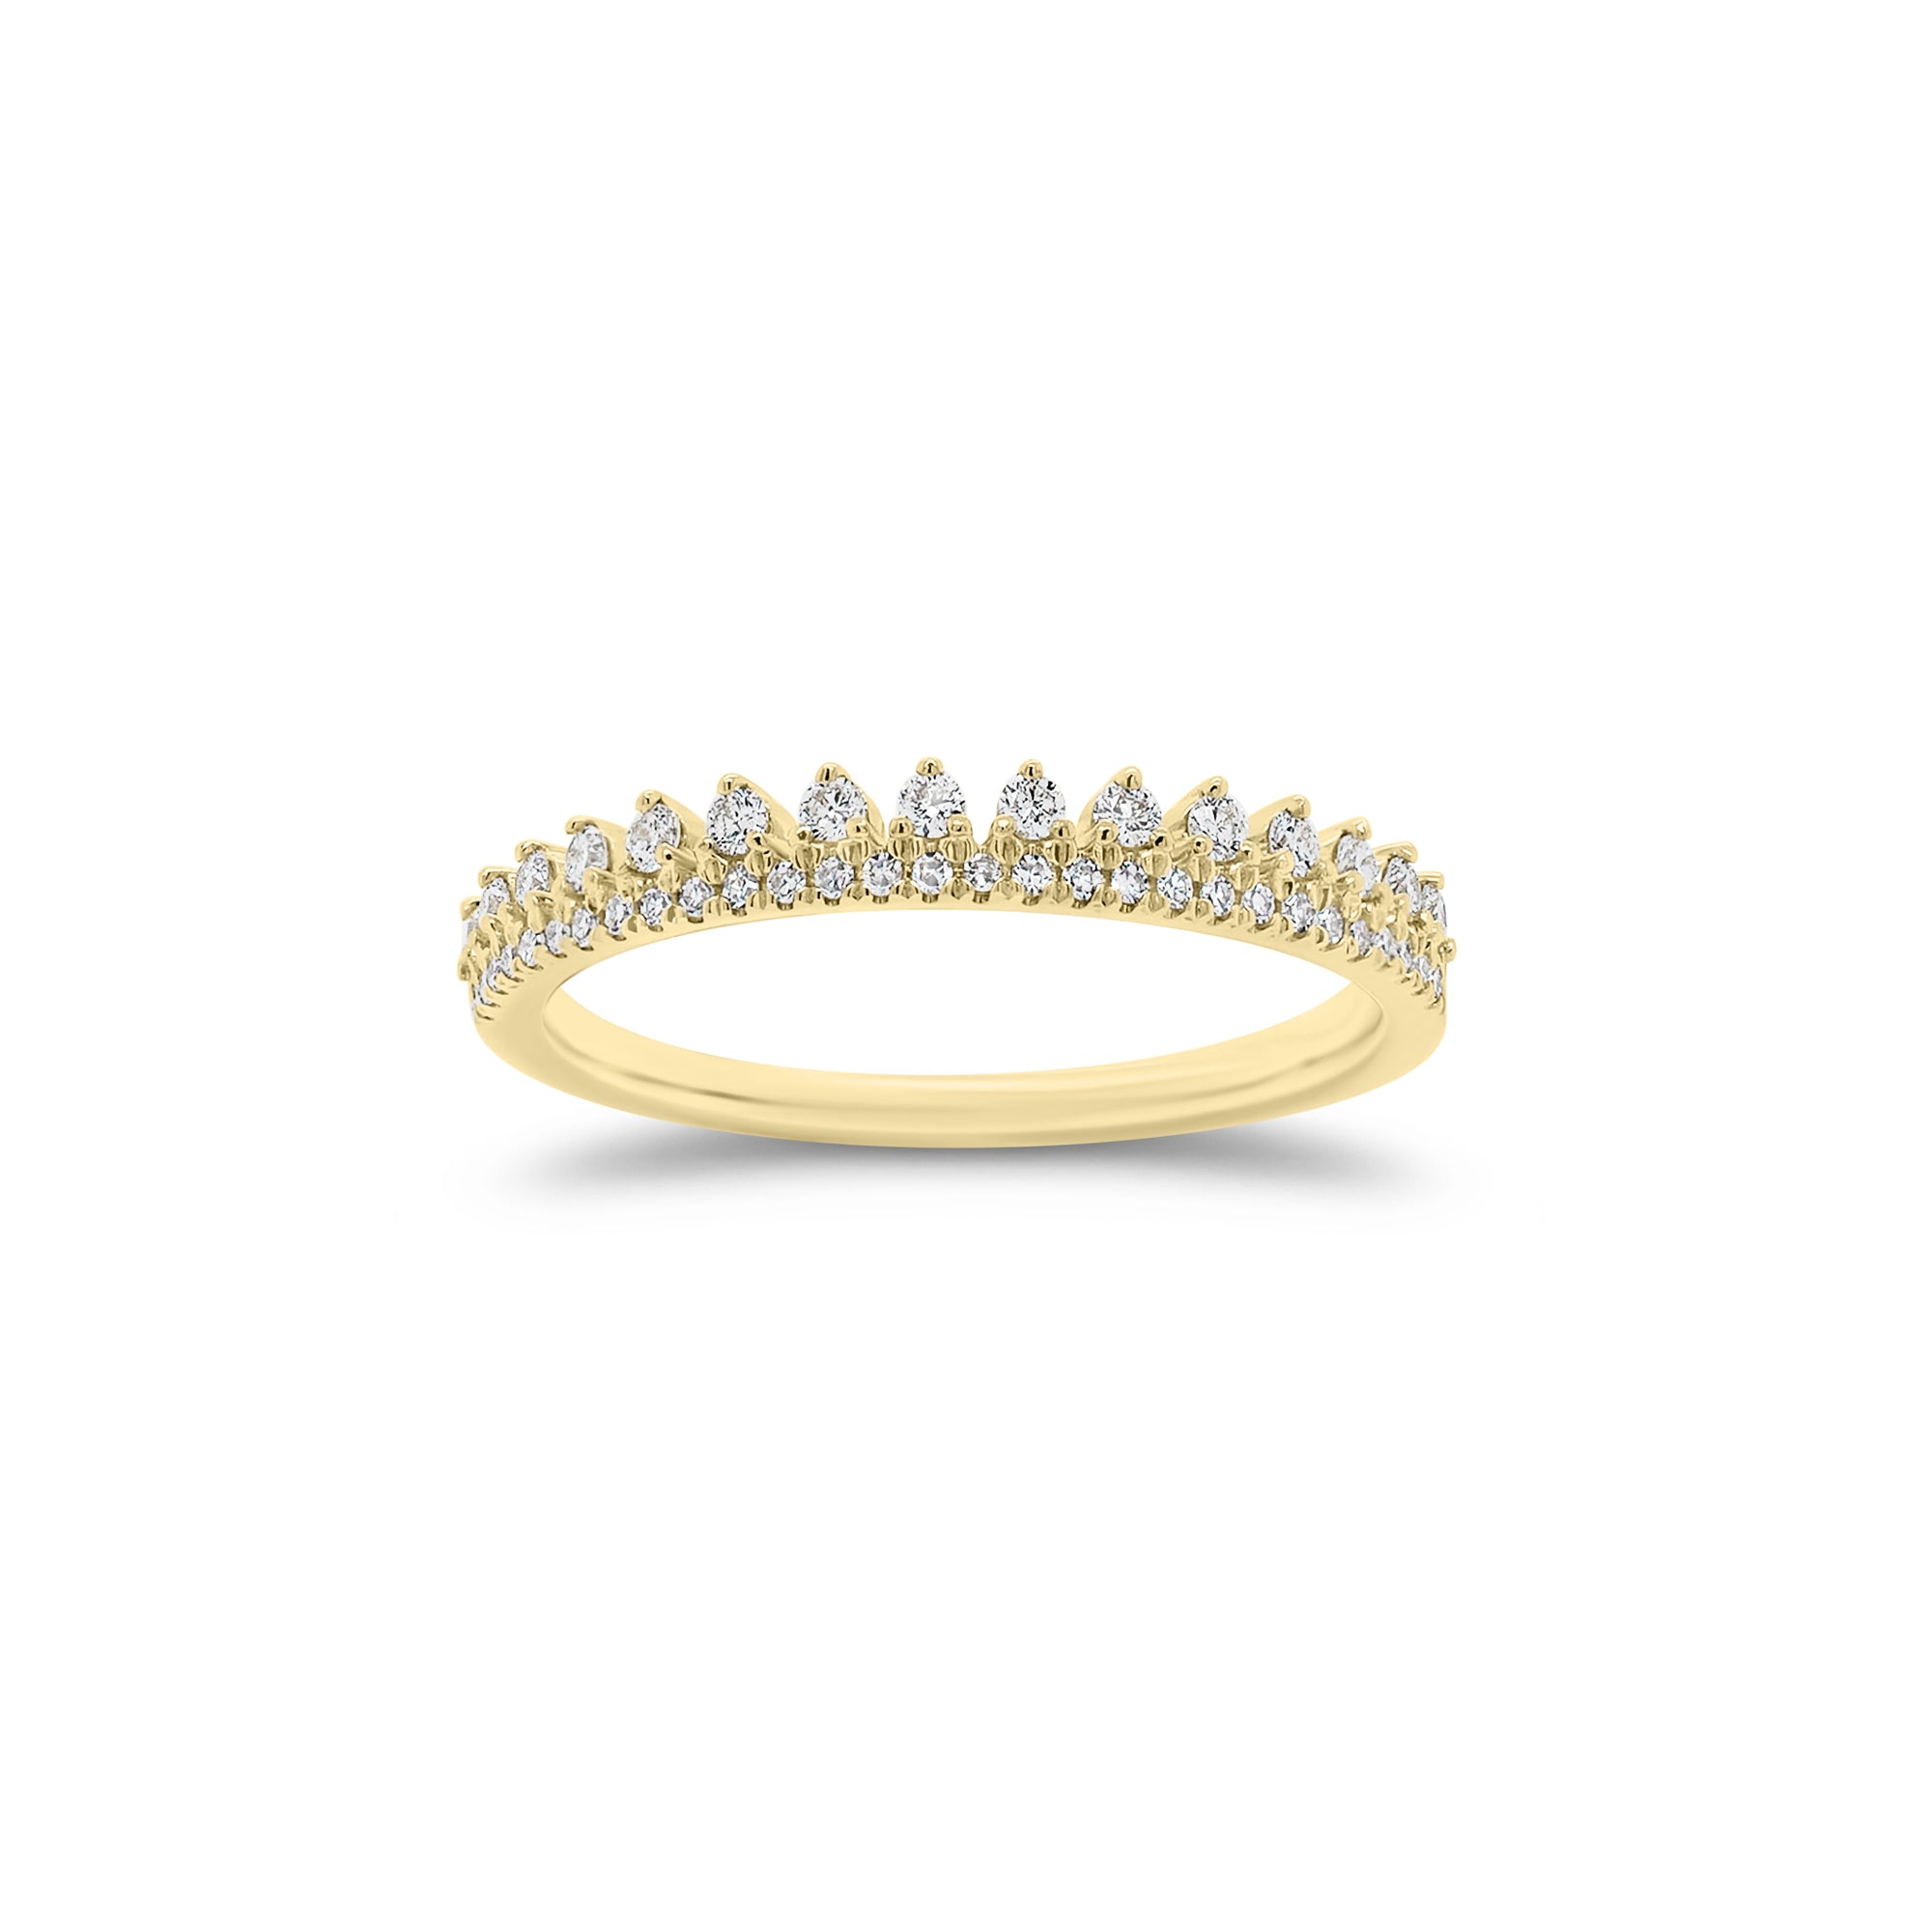 Diamond Crown Wedding Band - 14K gold weighing 0.23 grams  - 44 round diamonds weighing 0.23 carats